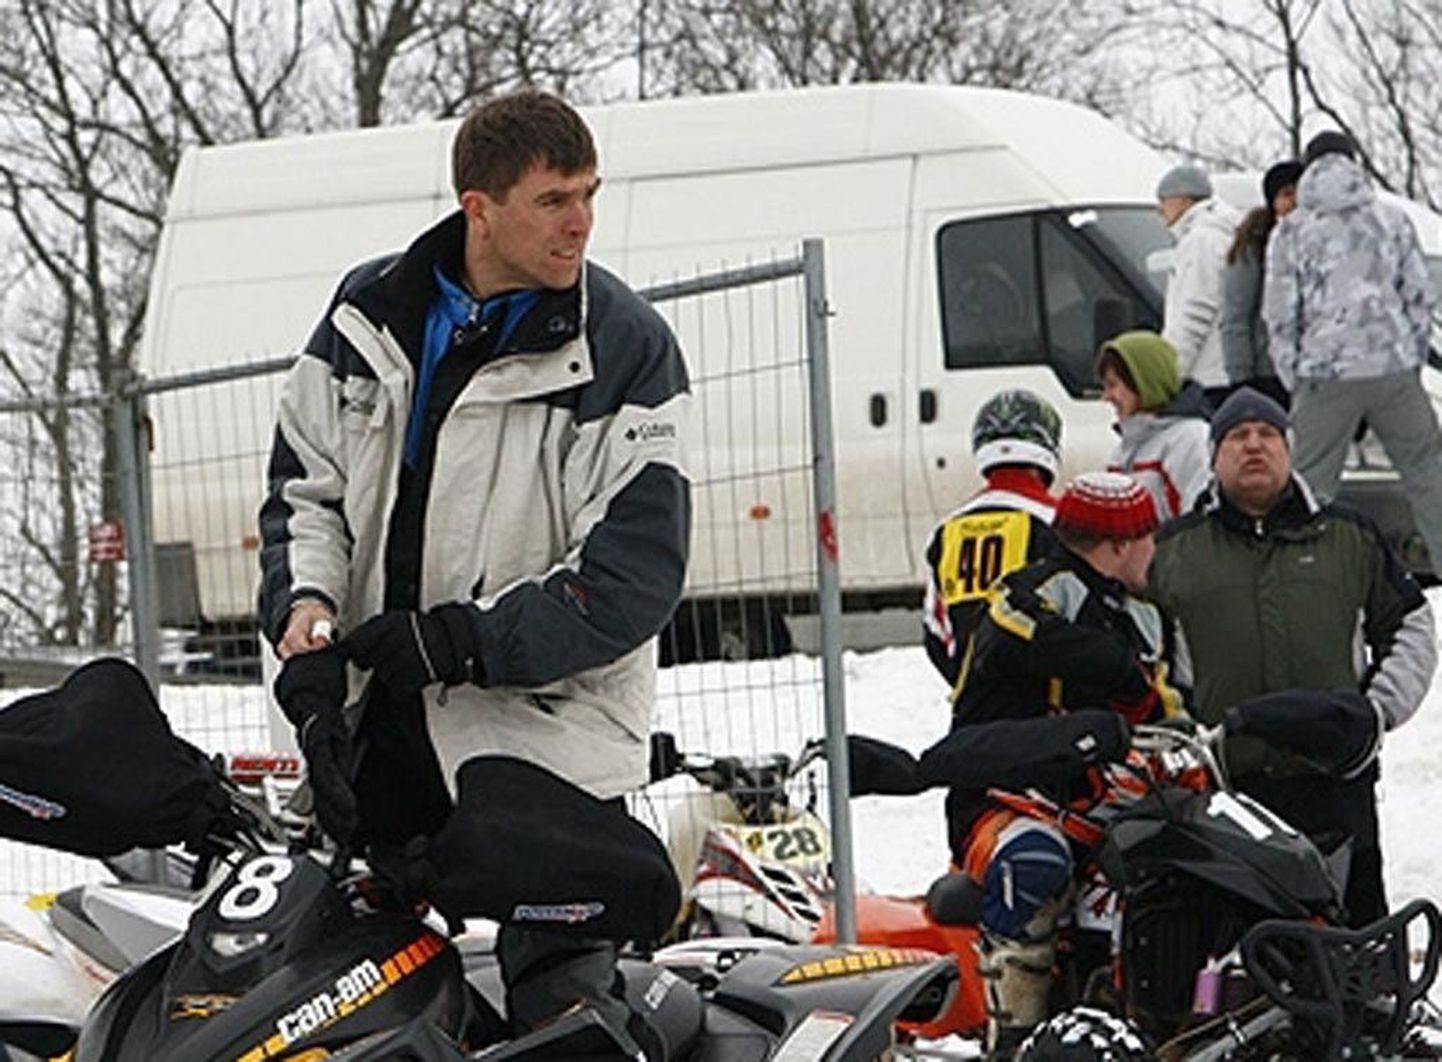 Neljandat aastat motokrossi harrastav Taavi Raadik võitis koos Toivo Nikopensiusega teise auhinna.